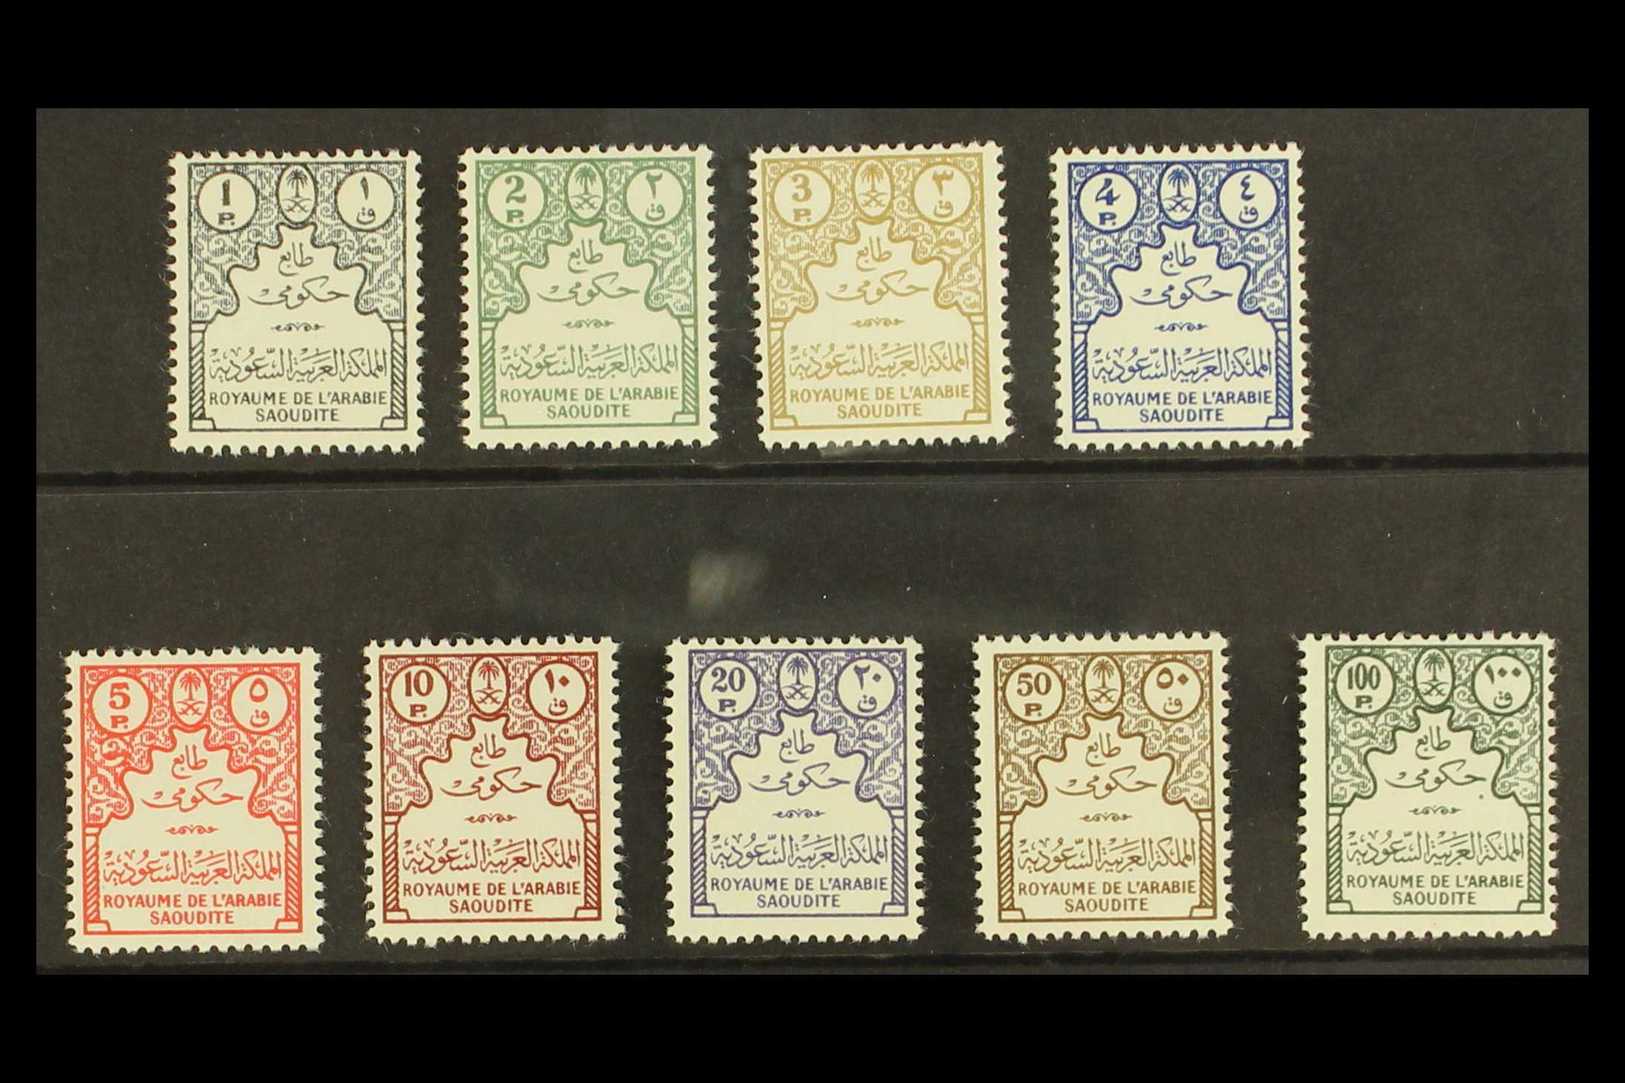 7867 SAUDI ARABIA - Saudi Arabia